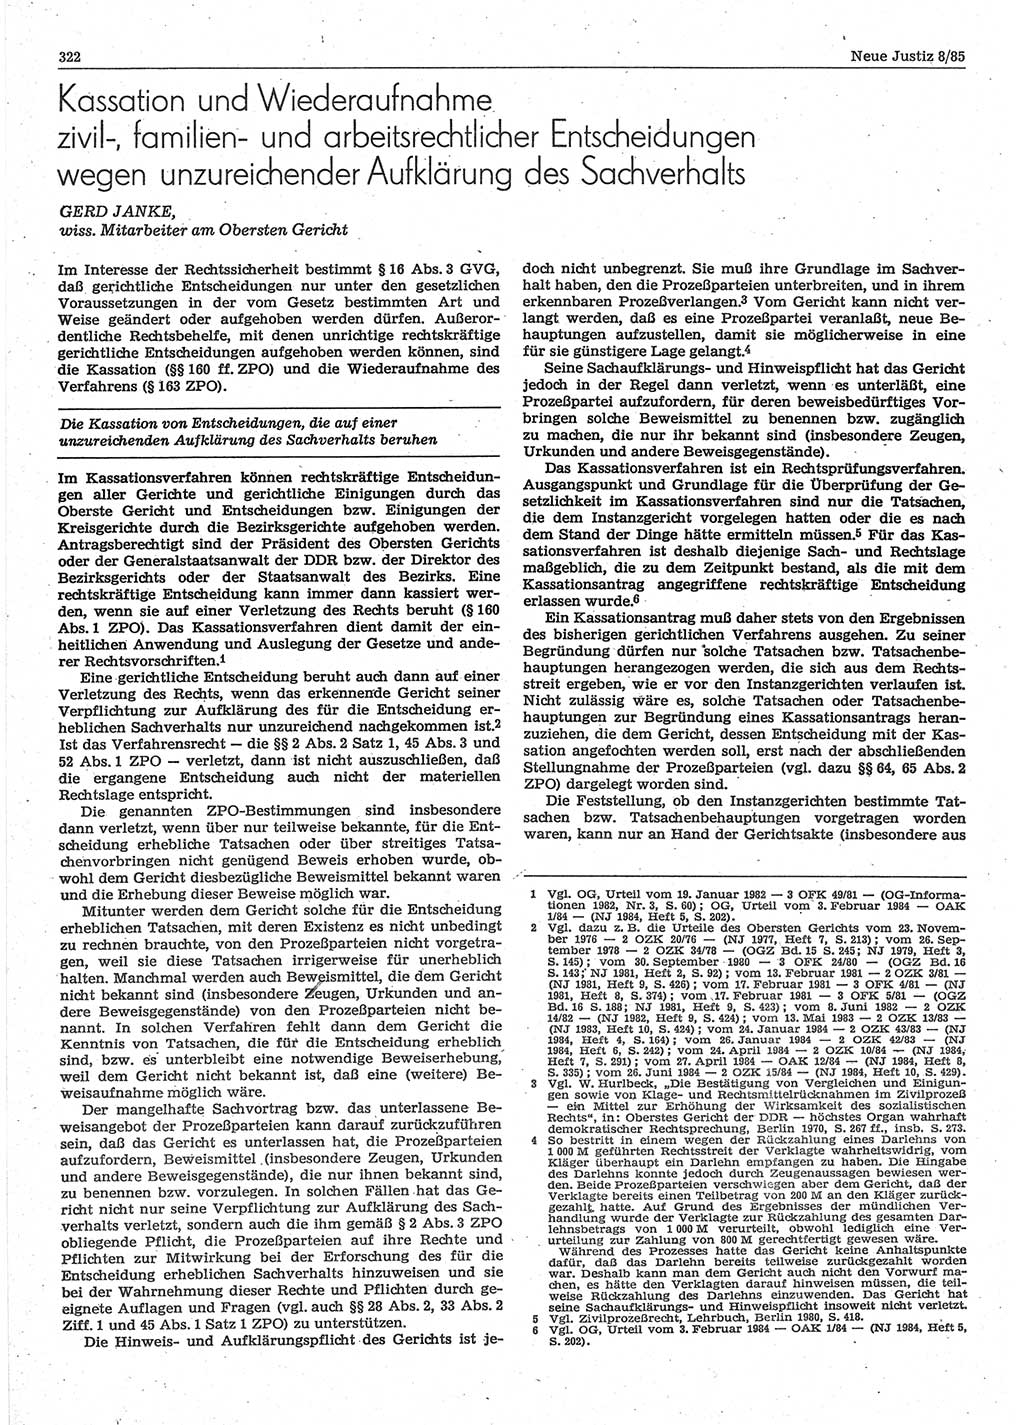 Neue Justiz (NJ), Zeitschrift für sozialistisches Recht und Gesetzlichkeit [Deutsche Demokratische Republik (DDR)], 39. Jahrgang 1985, Seite 322 (NJ DDR 1985, S. 322)